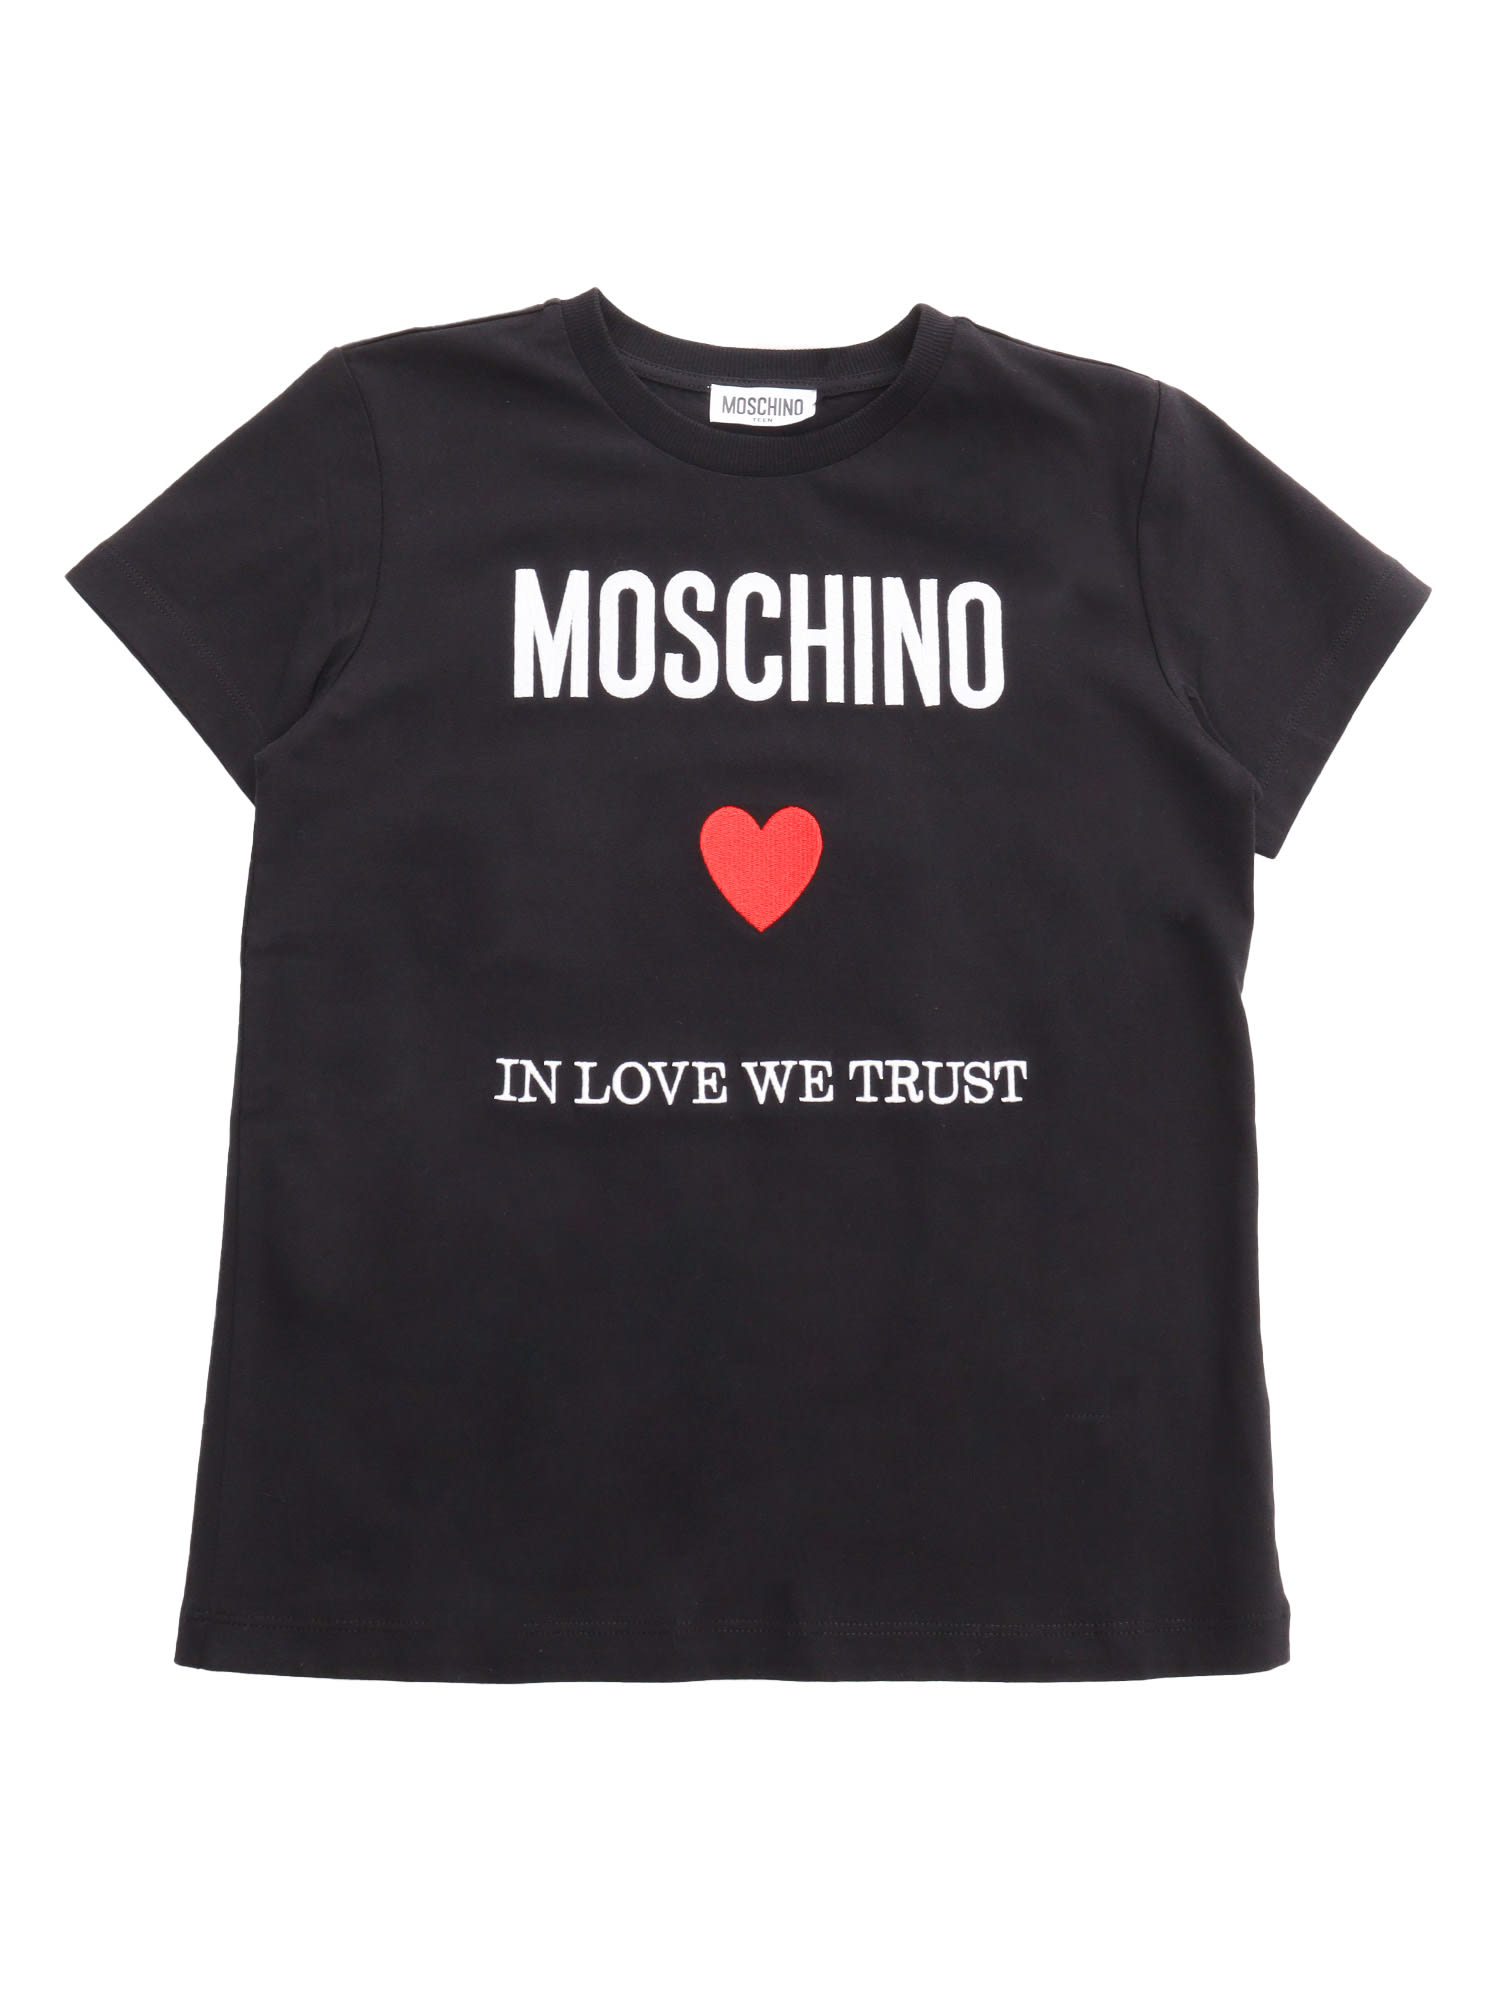 Moschino Kids' Black T-shirt